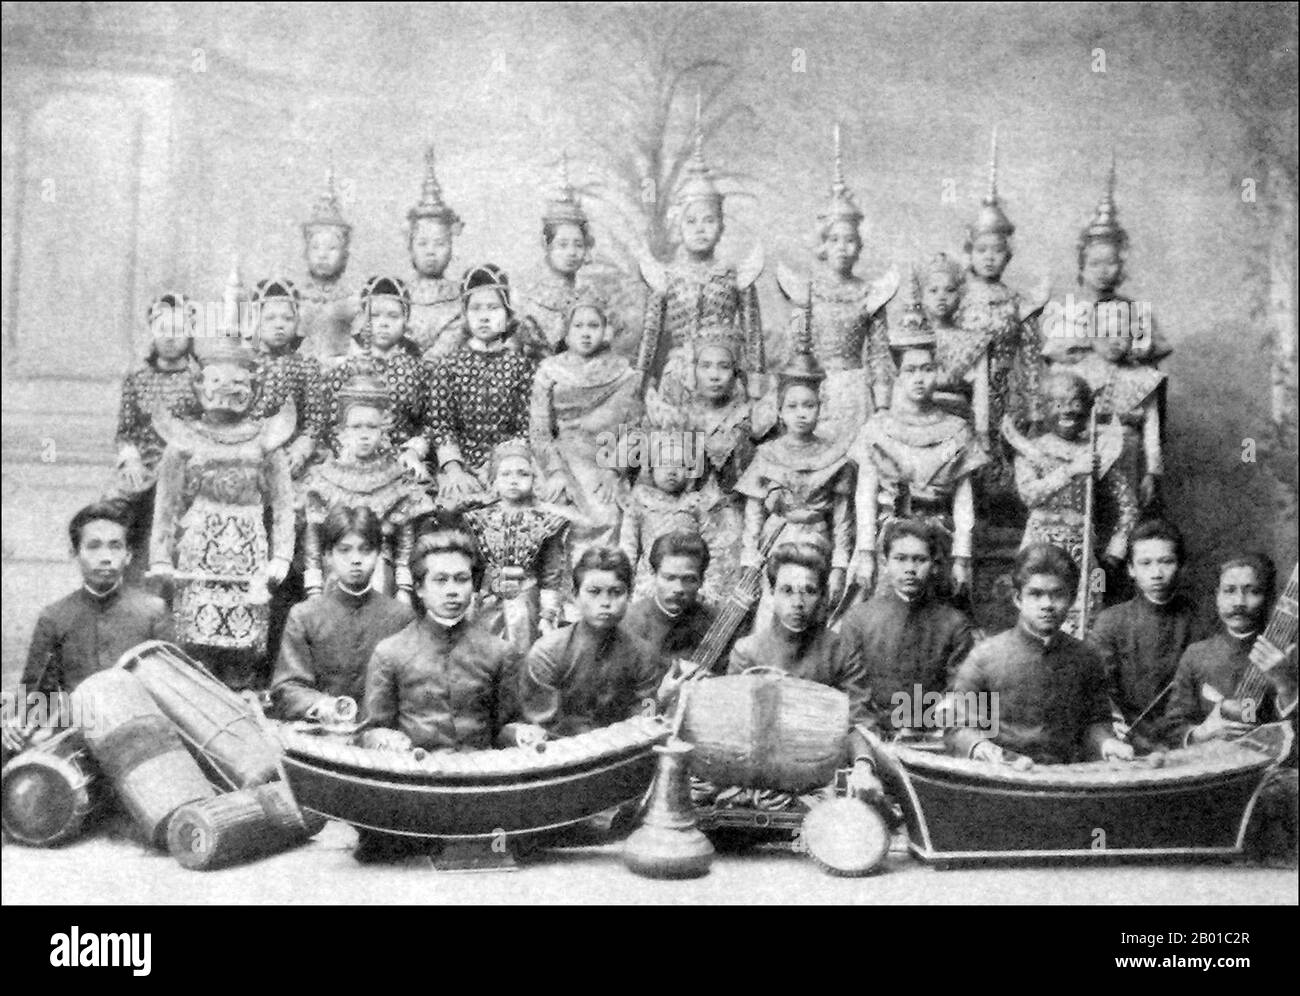 Thaïlande: Orchestre au tribunal siamois de Bangkok, avant leur départ à Berlin, c. 1900. La musique classique thaïlandaise est synonyme de ces ensembles et répertoires de cour stylisés qui ont émergé dans sa forme actuelle dans les centres royaux de la Thaïlande centrale il y a environ 800 ans. Ces ensembles, bien qu'ils soient profondément influencés par les Khmers et même par les pratiques et répertoires plus anciens de l'Inde, sont aujourd'hui des expressions typiquement thaïlandaises. Banque D'Images